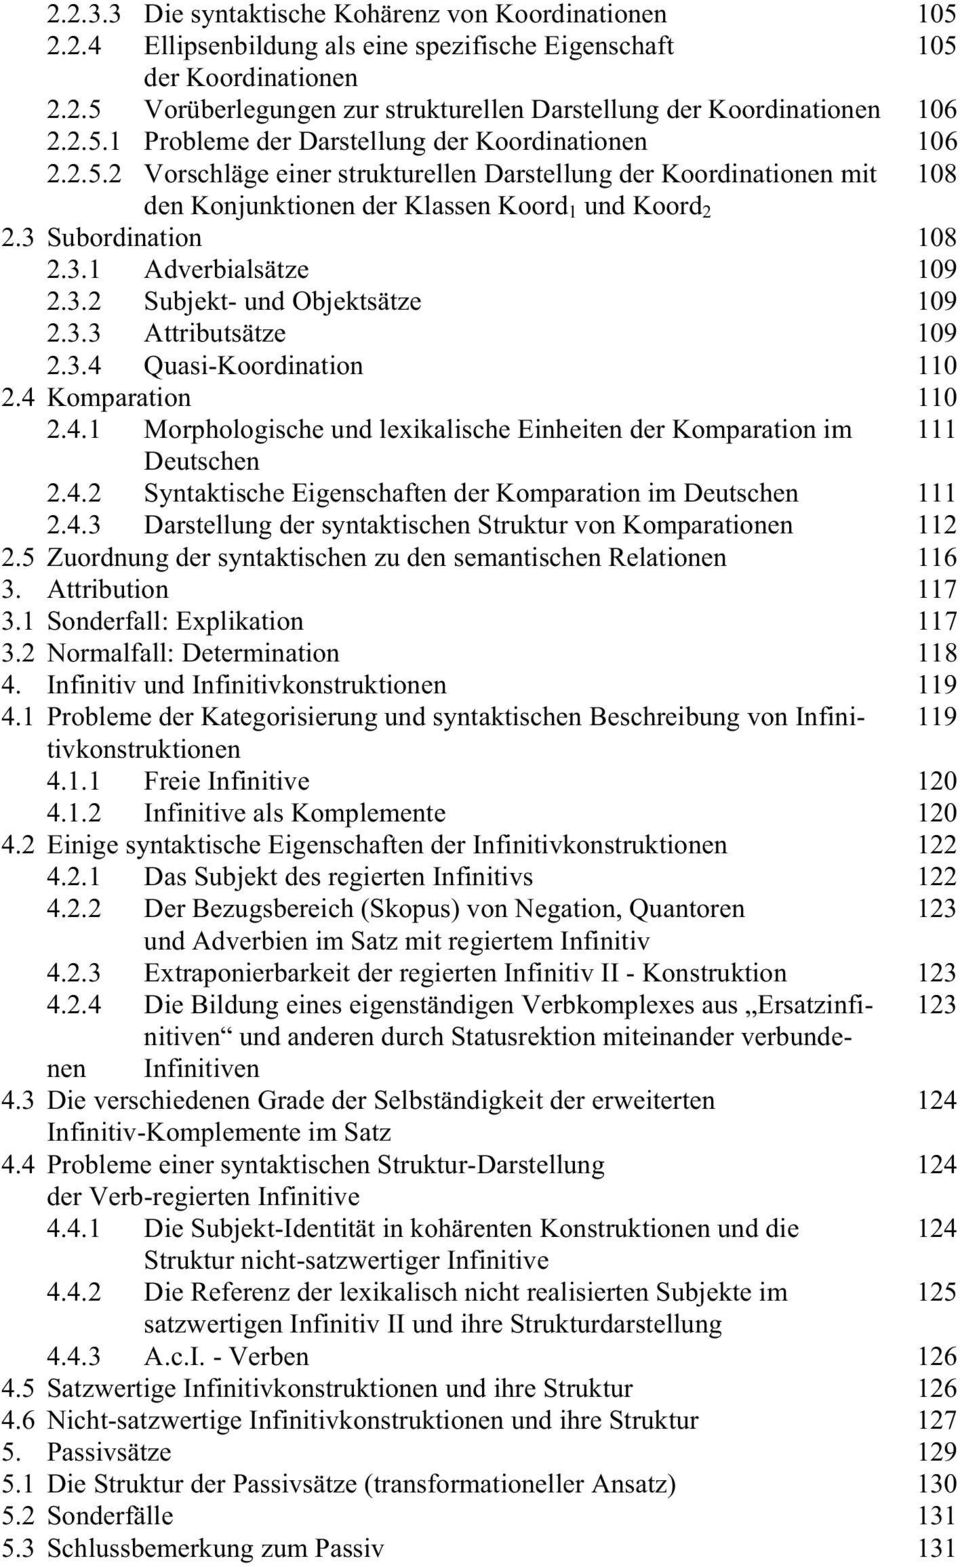 3 Subordination 108 2.3.1 Adverbialsätze 109 2.3.2 Subjekt- und Objektsätze 109 2.3.3 Attributsätze 109 2.3.4 Quasi-Koordination 110 2.4 Komparation 110 2.4.1 Morphologische und lexikalische Einheiten der Komparation im 111 Deutschen 2.